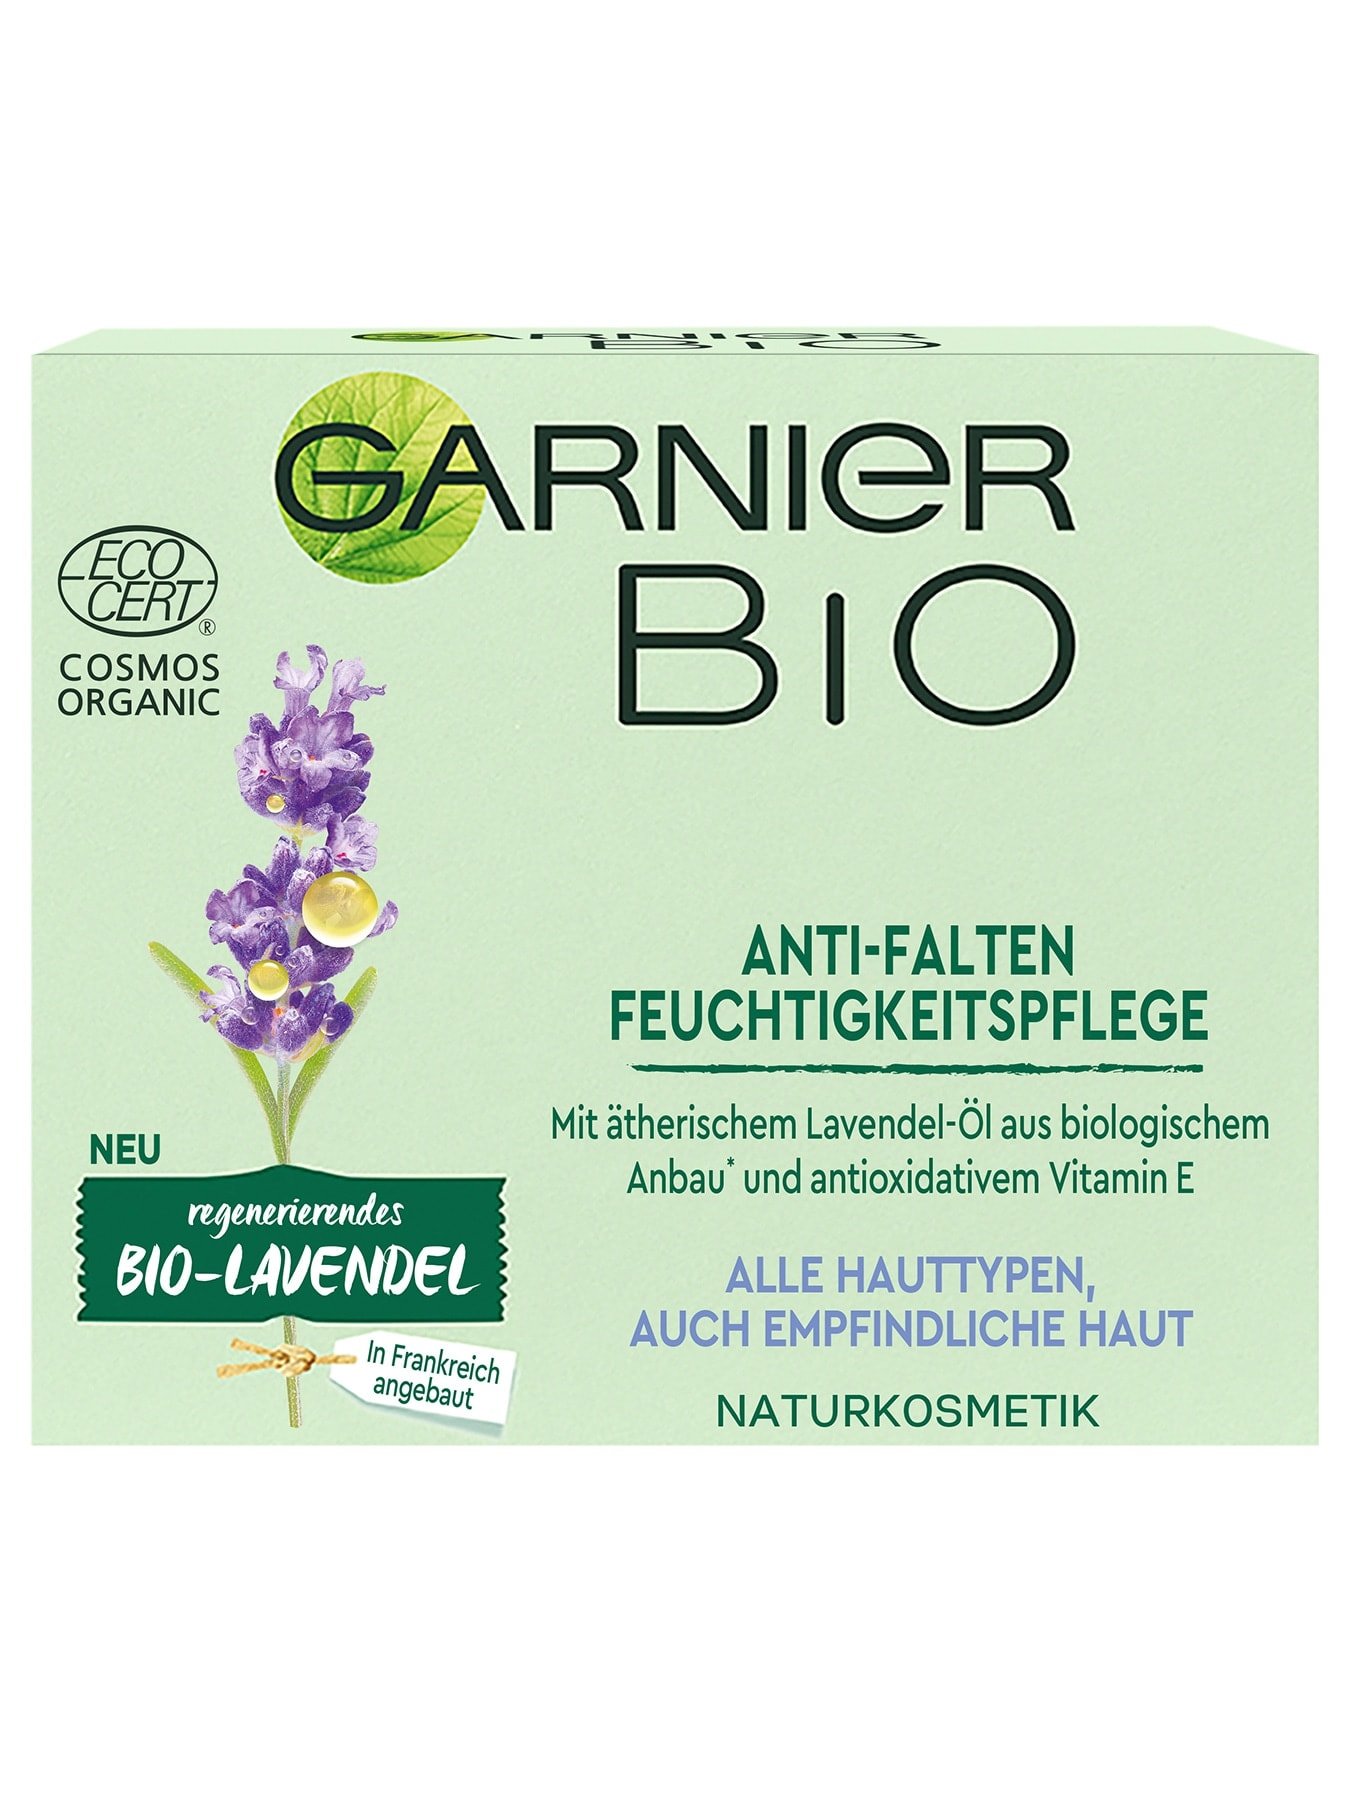 Garnier Bio Lavendel Anti-Falten Feuchtigkeitspflege - Verpackung